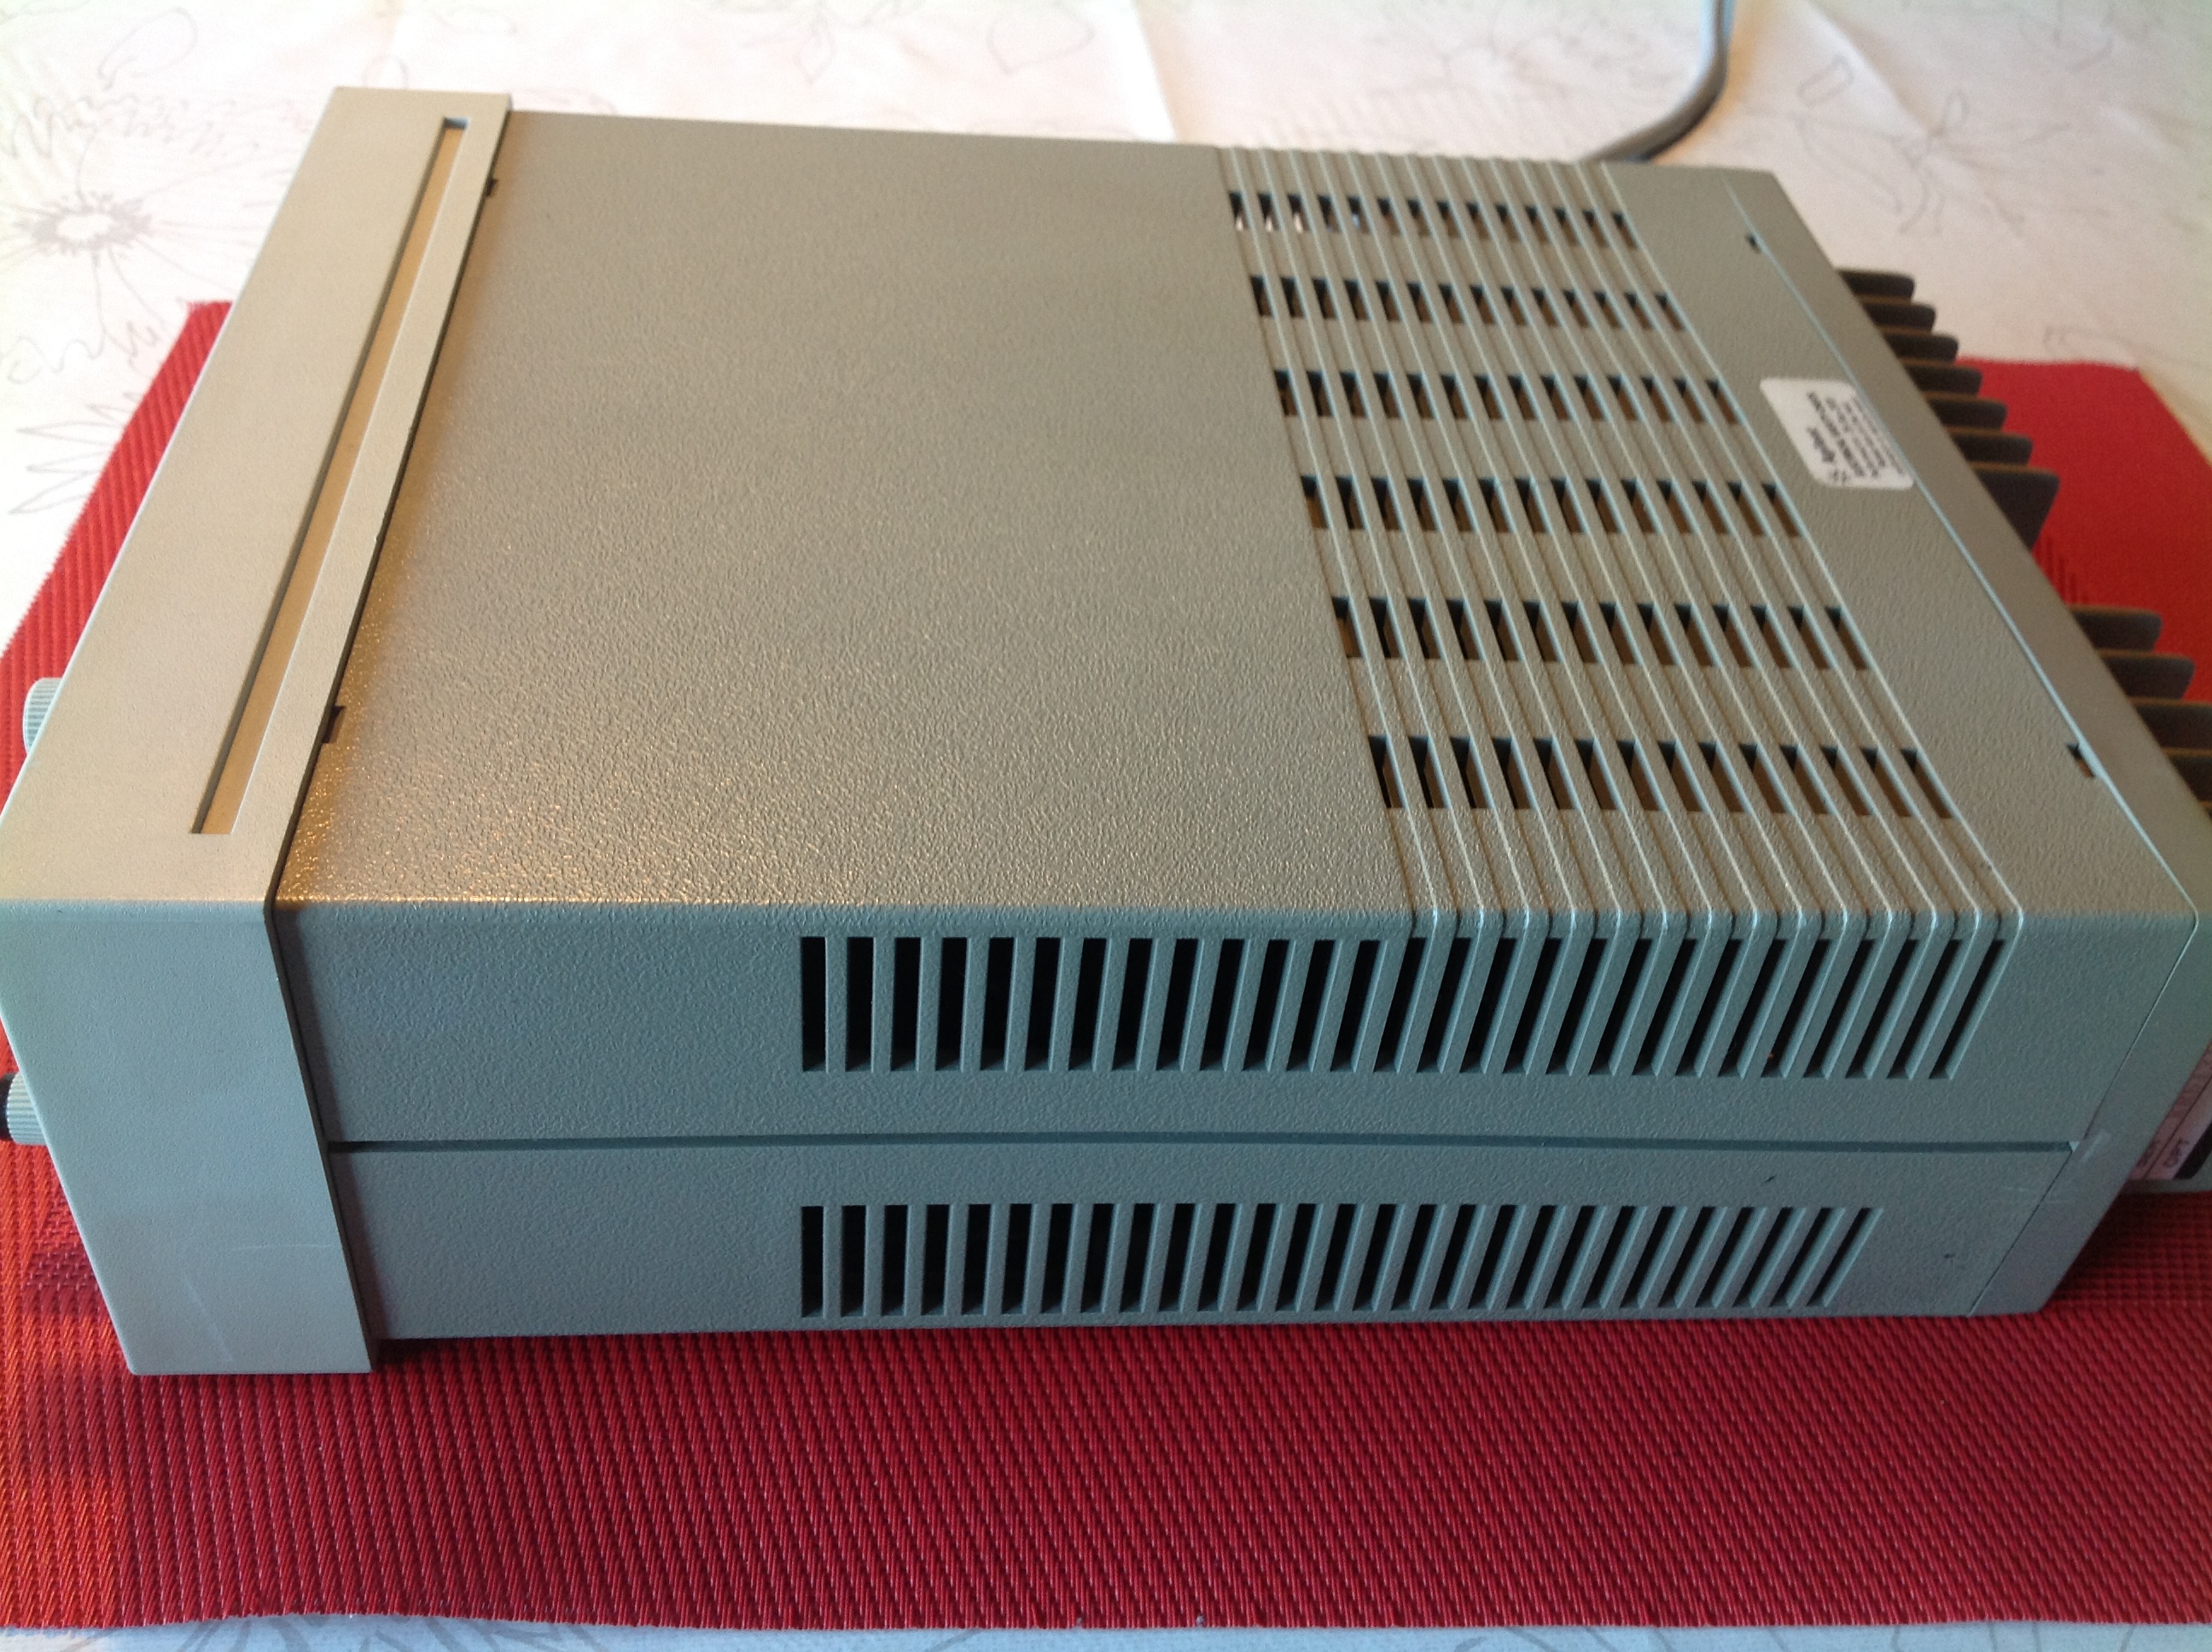 Hewlett Packard E3610A DC Power Supply 0-8V, 3A/ 0-15V, 0-2A